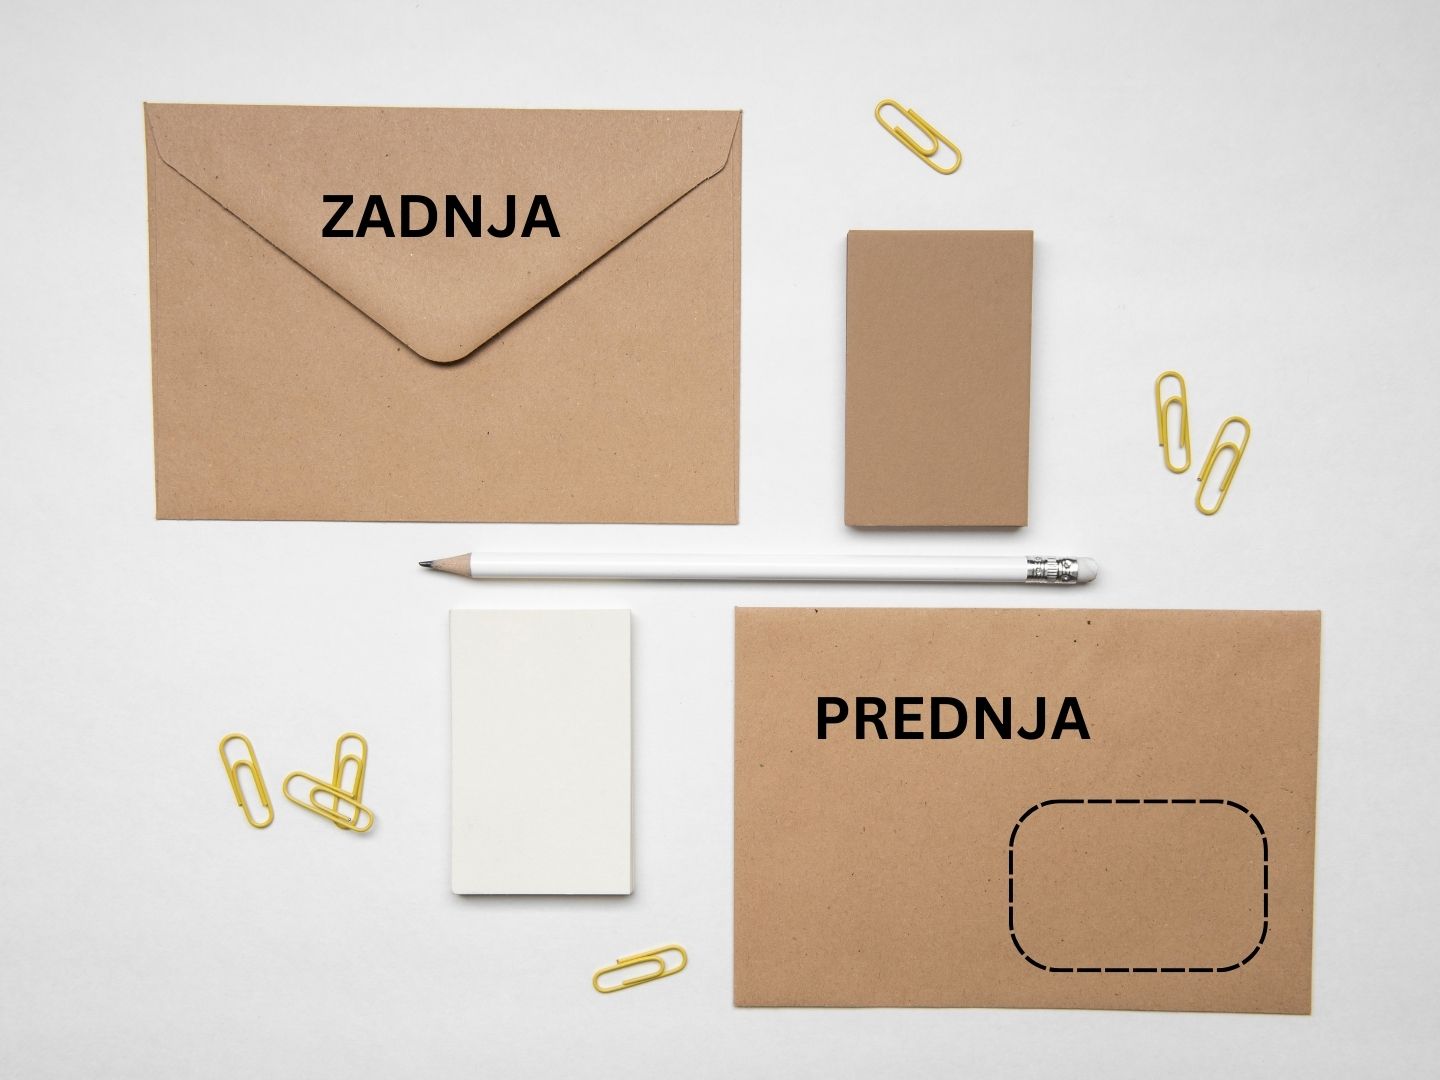 Slika prednje i zadnje strane kuverte, a na prednjoj strani ocrtano mjesto gdje se treba upisati adresa primatelja pošiljke